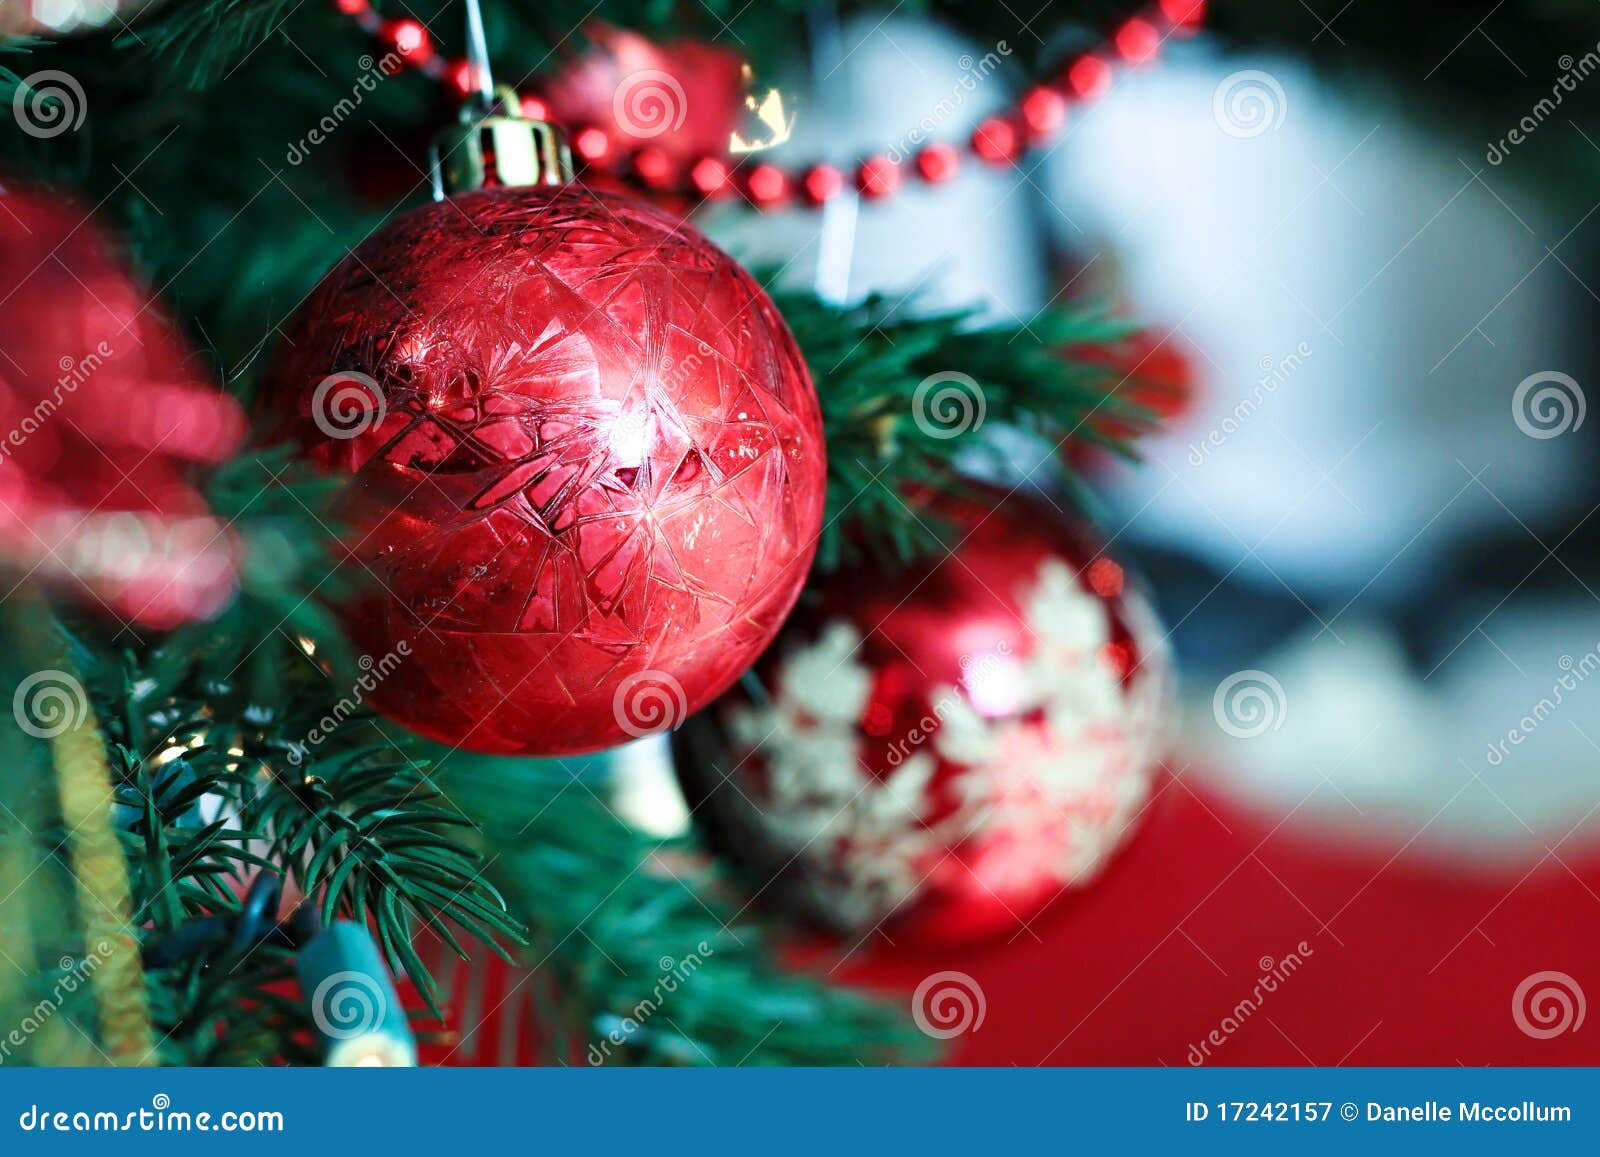 De Rode Bollen Van Kerstmis Stock Afbeelding - Image of boom ...